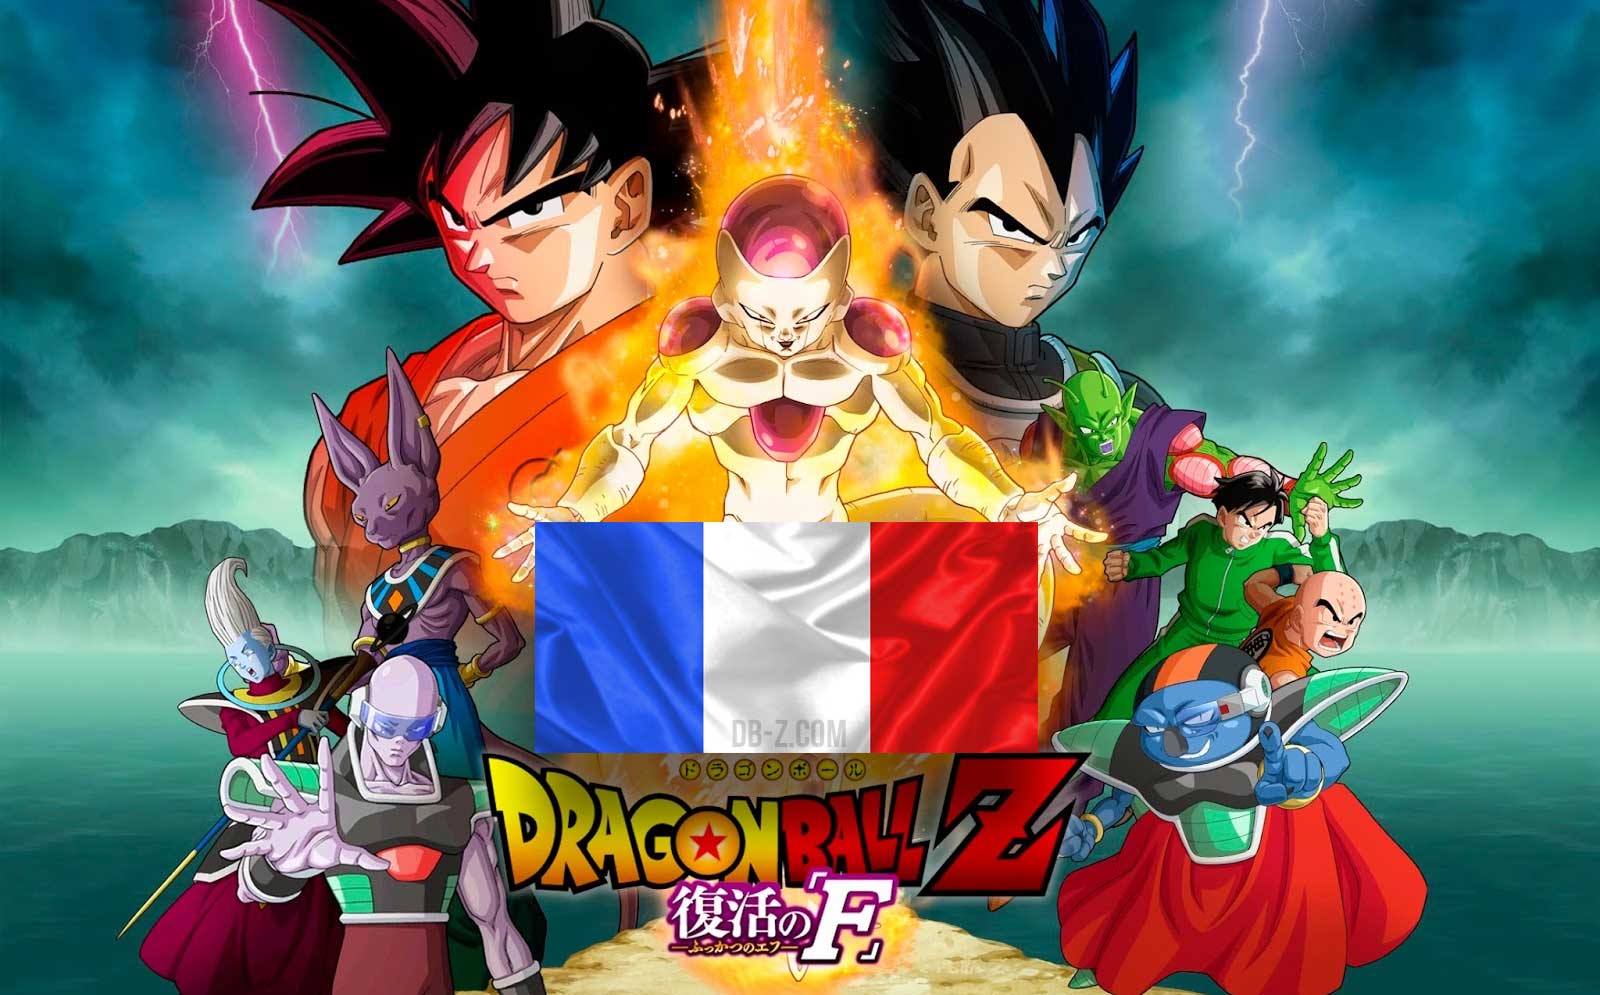 Dragon Ball Z Résurrection F s'envole dans 74 pays !